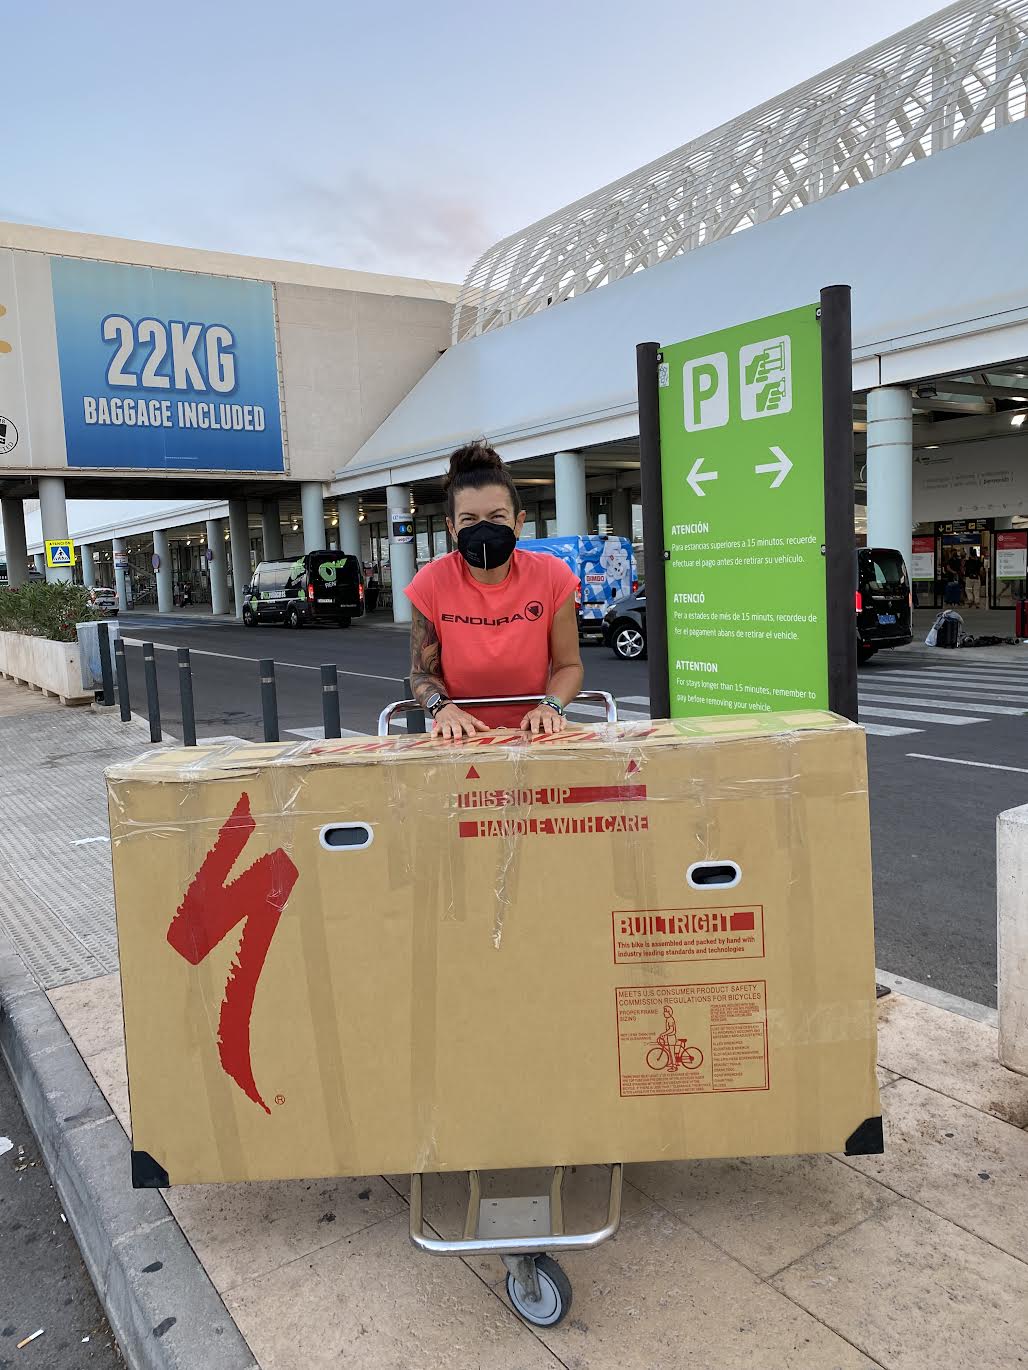 En el aeropuerto de Palma de Mallorca. Con la bici embalada en una caja de cartón, lista para facturar.